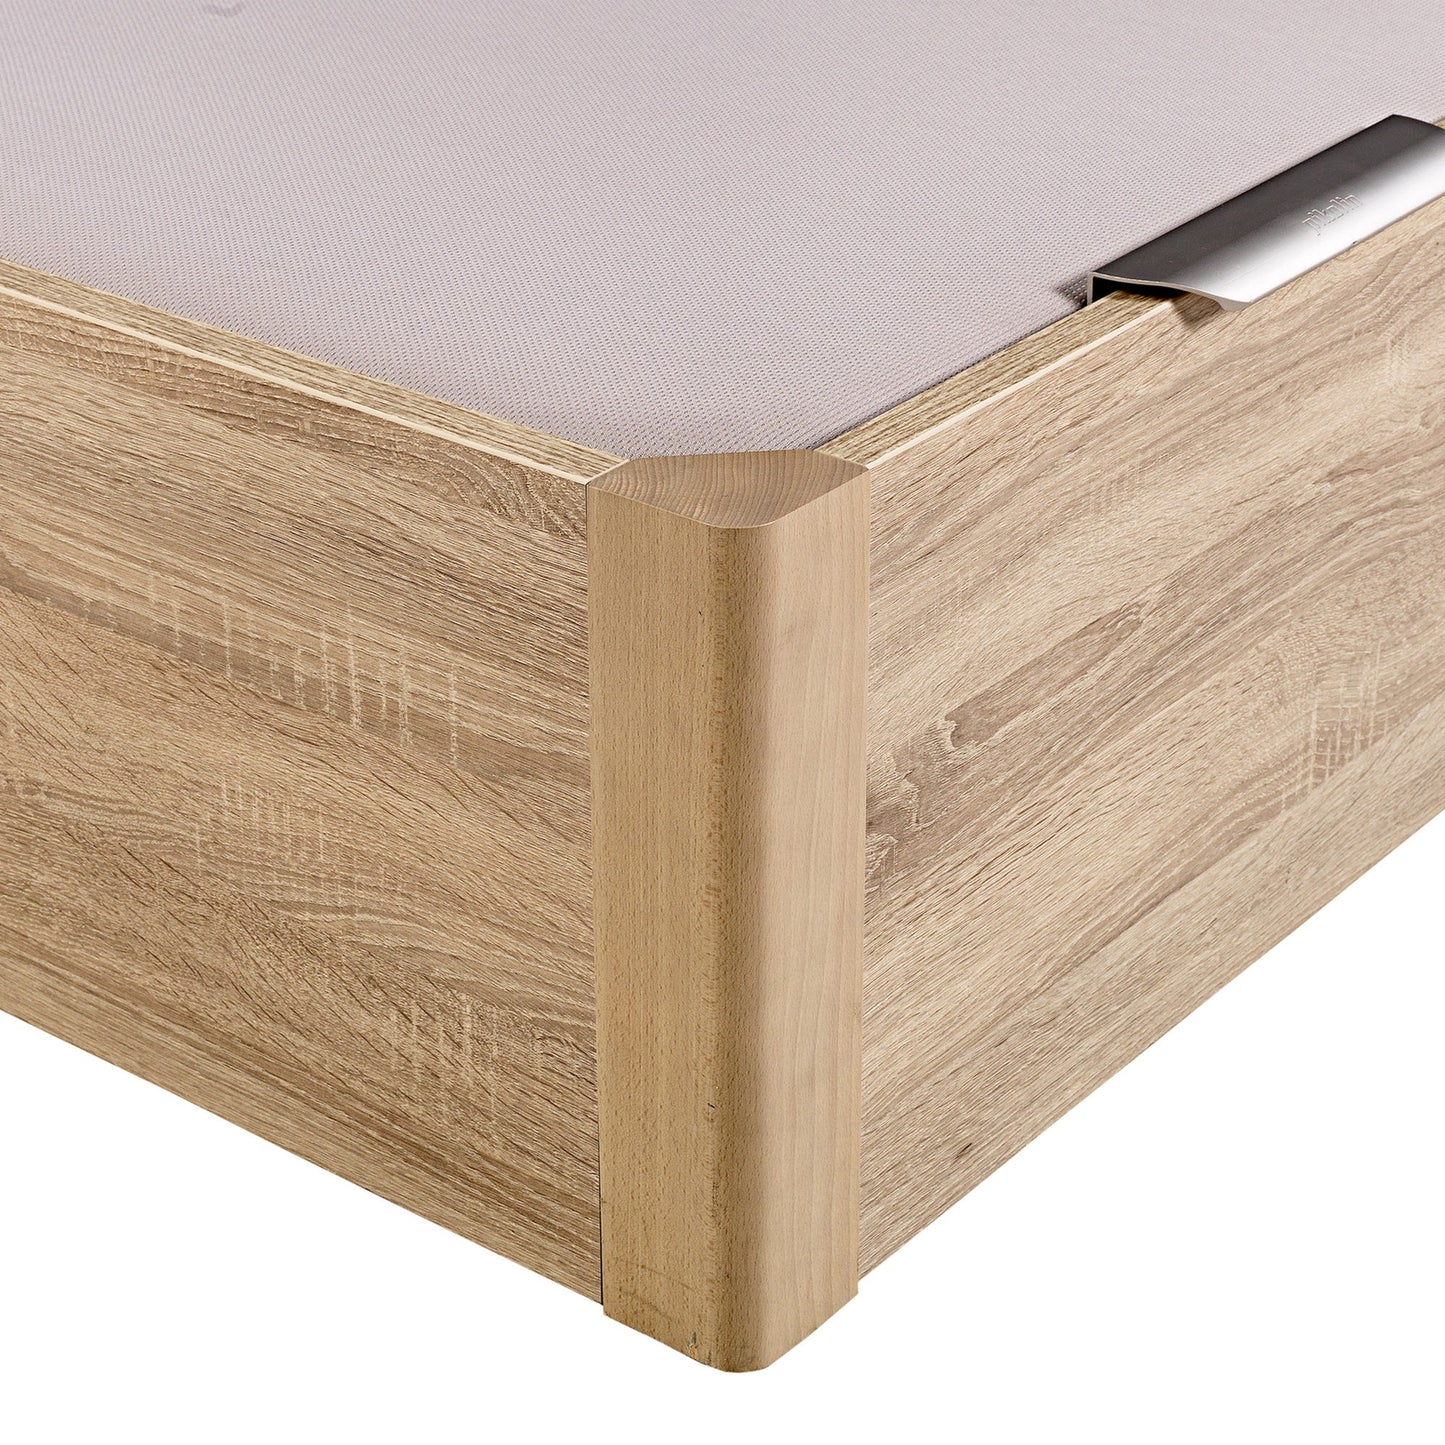 Canapé abatible de madera de alta capacidad tapa doble de color natural - DESIGN - 200x190